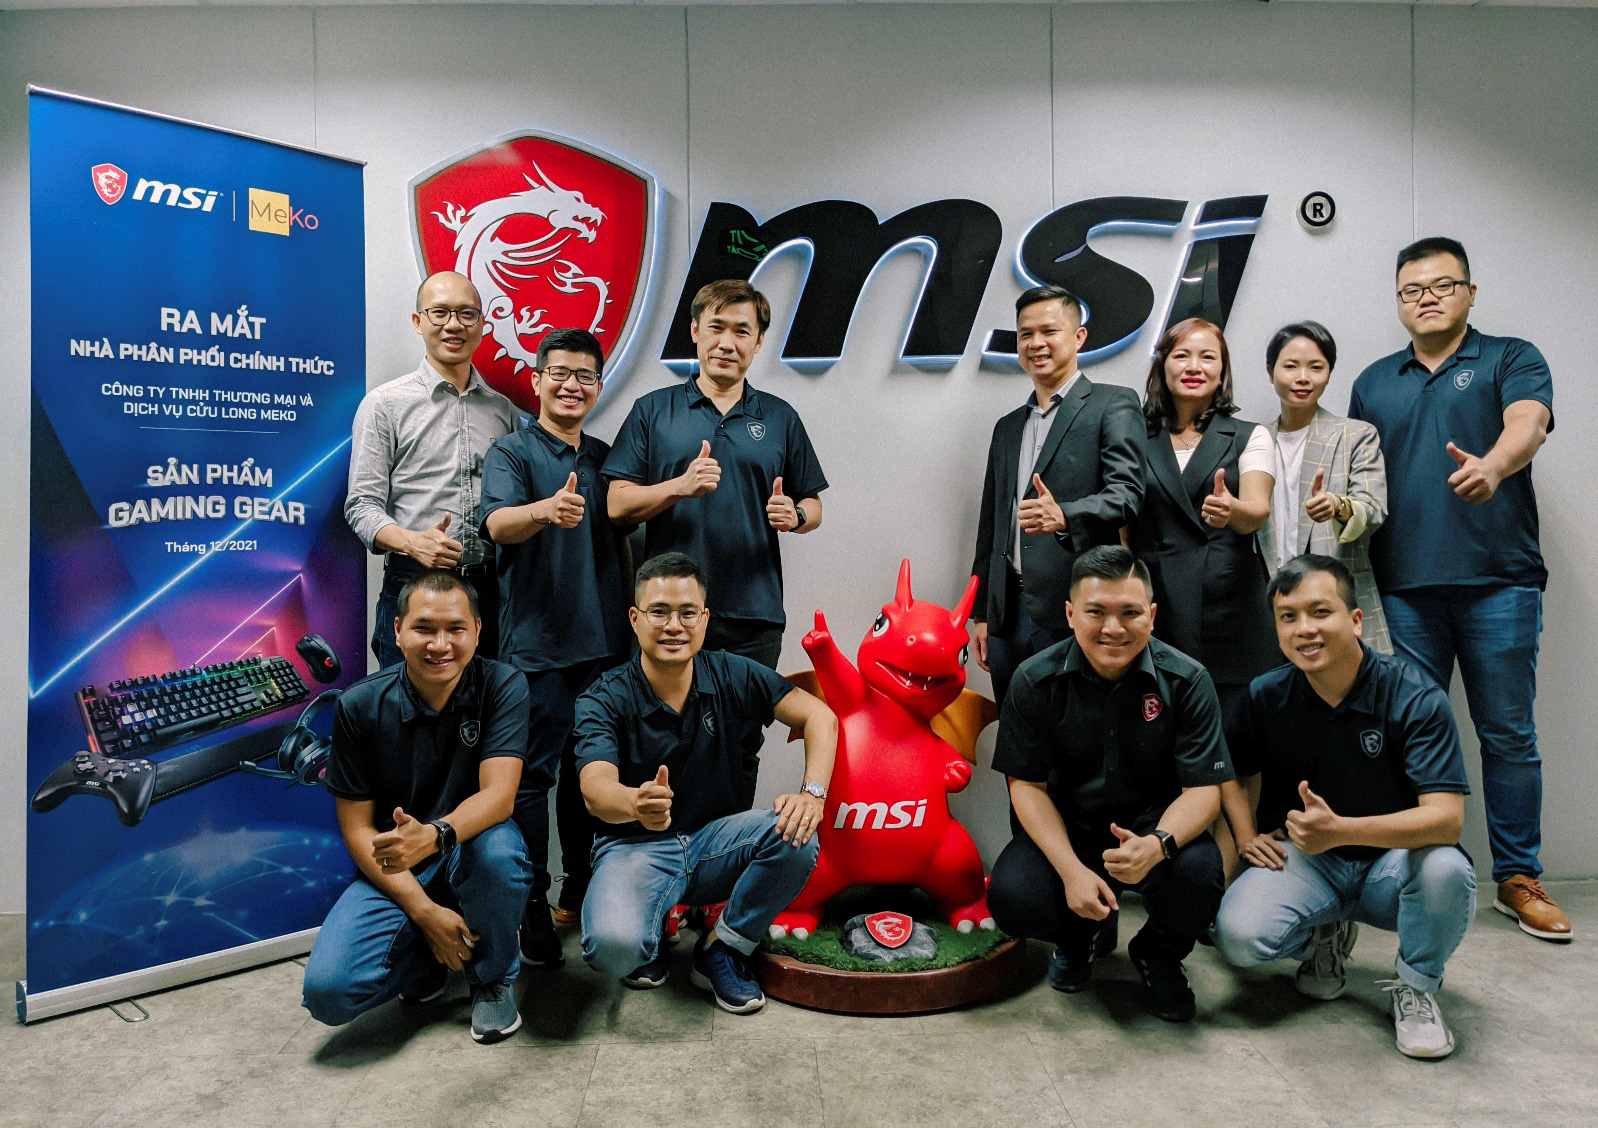 Công ty MeKo - nhà phân phối chính thức thương hiệu MSI - Ảnh 2.